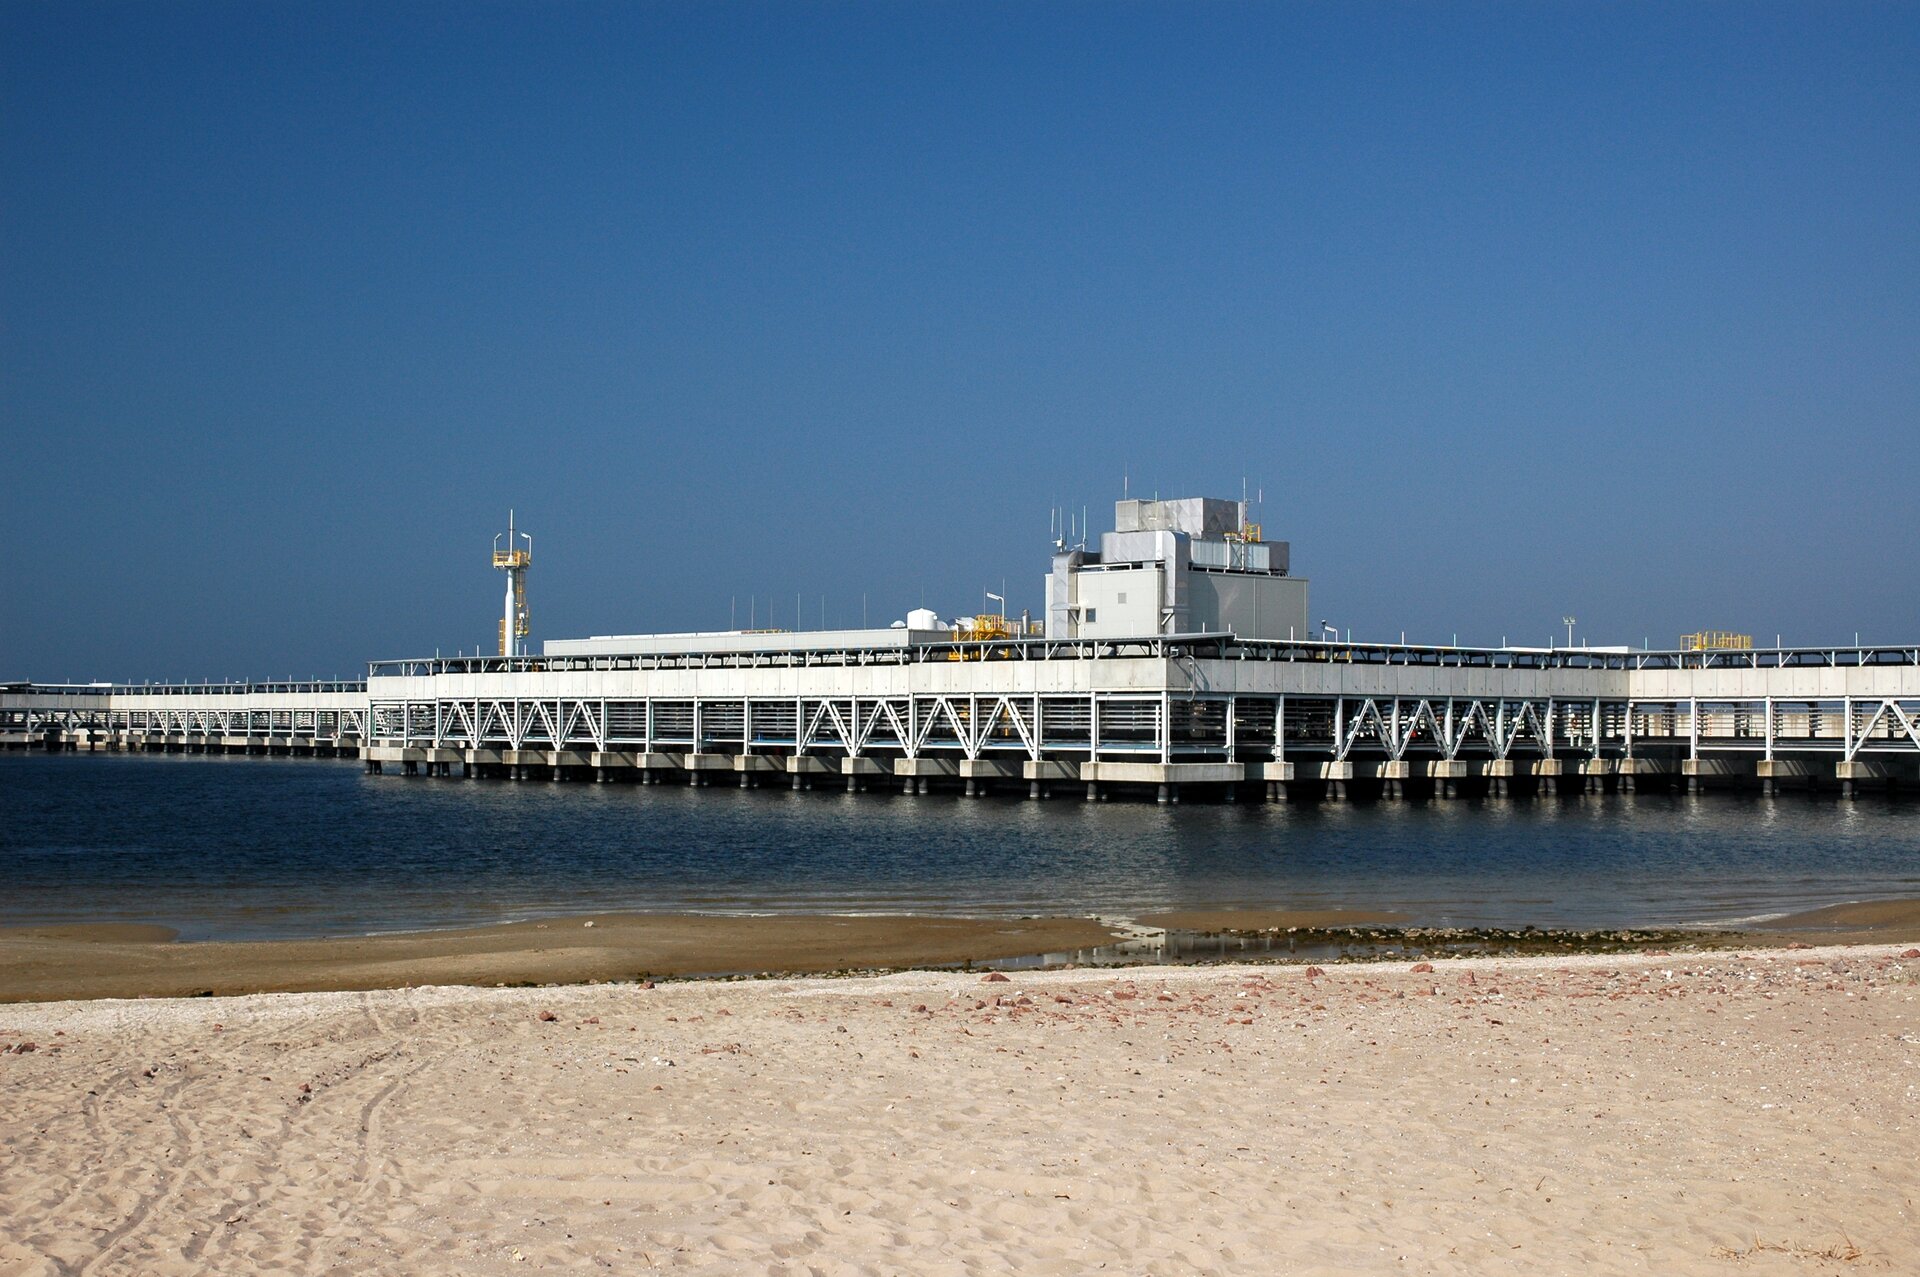 Zdjęcie przedstawia nabrzeże w Świnoujściu. Na pierwszym planie jest piasek, dalej morze oraz zbudowana na palach biała konstrukcja służąca do przeładunku LNG.